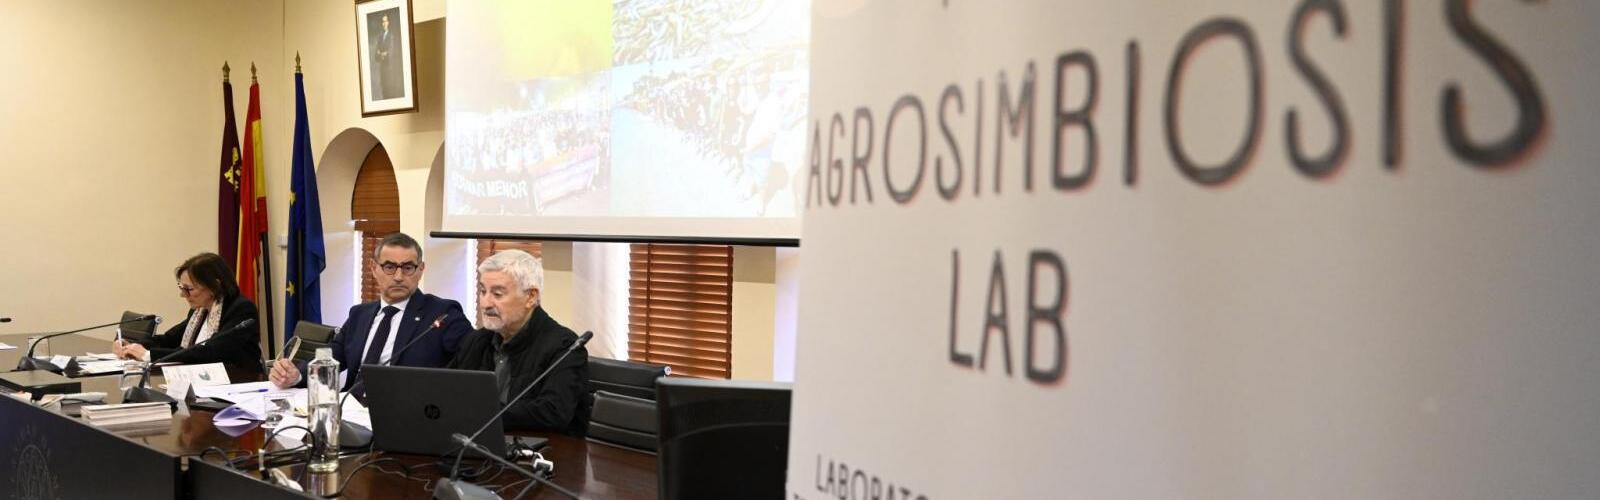 Nota de prensa - La UMU lidera AgrosimbiosisLab, un proyecto para contribuir a la recuperación del Mar Menor